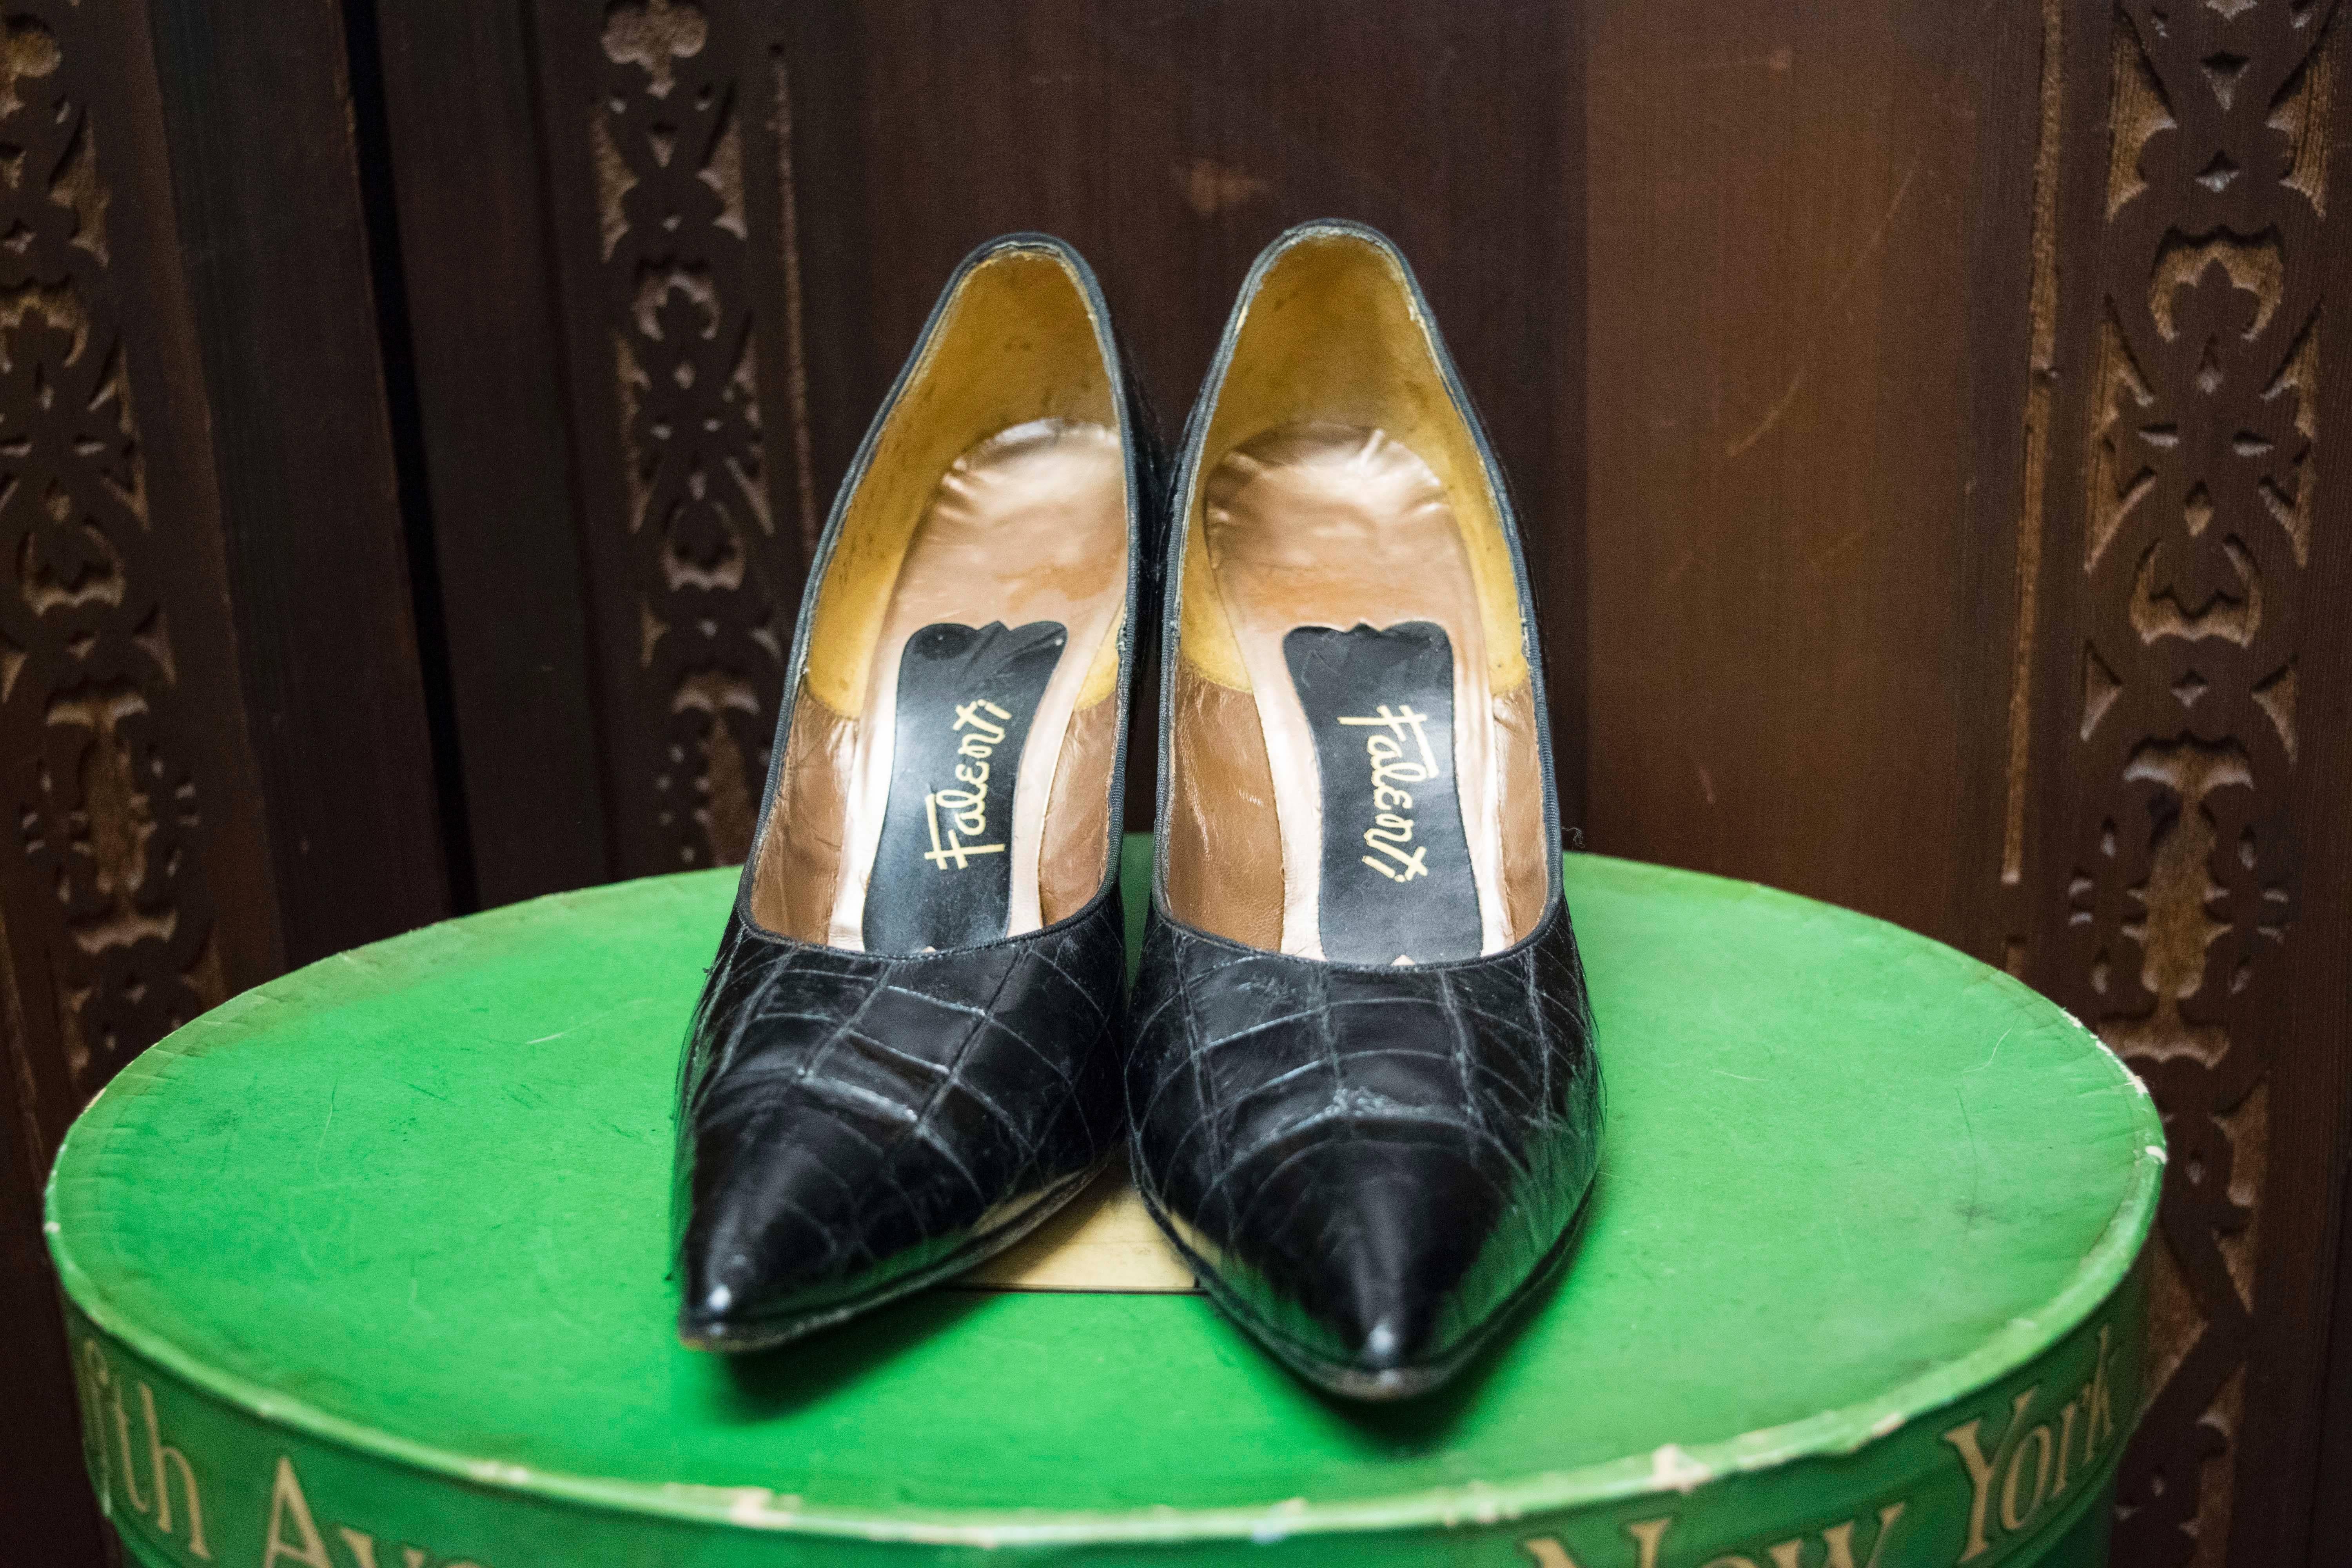 1950s high heels